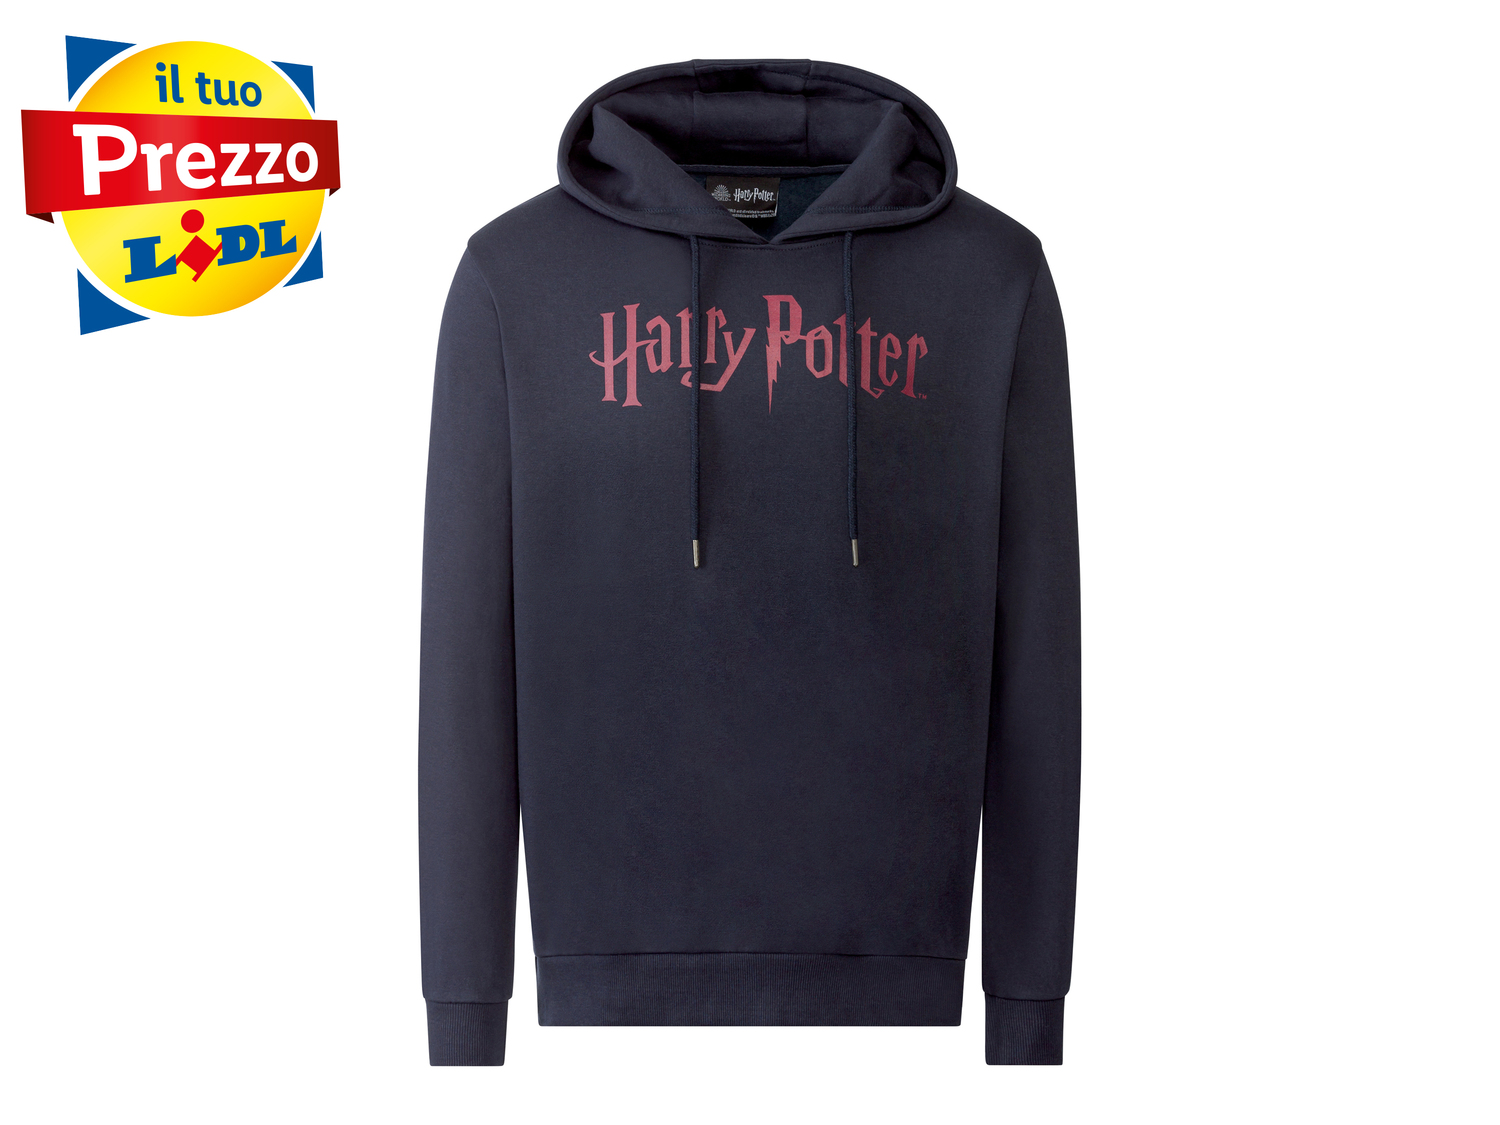 Felpa da uomo Harry Potter Oeko-tex, prezzo 11.99 € 
Misure: S-XL
Taglie disponibili

Caratteristiche

- ...